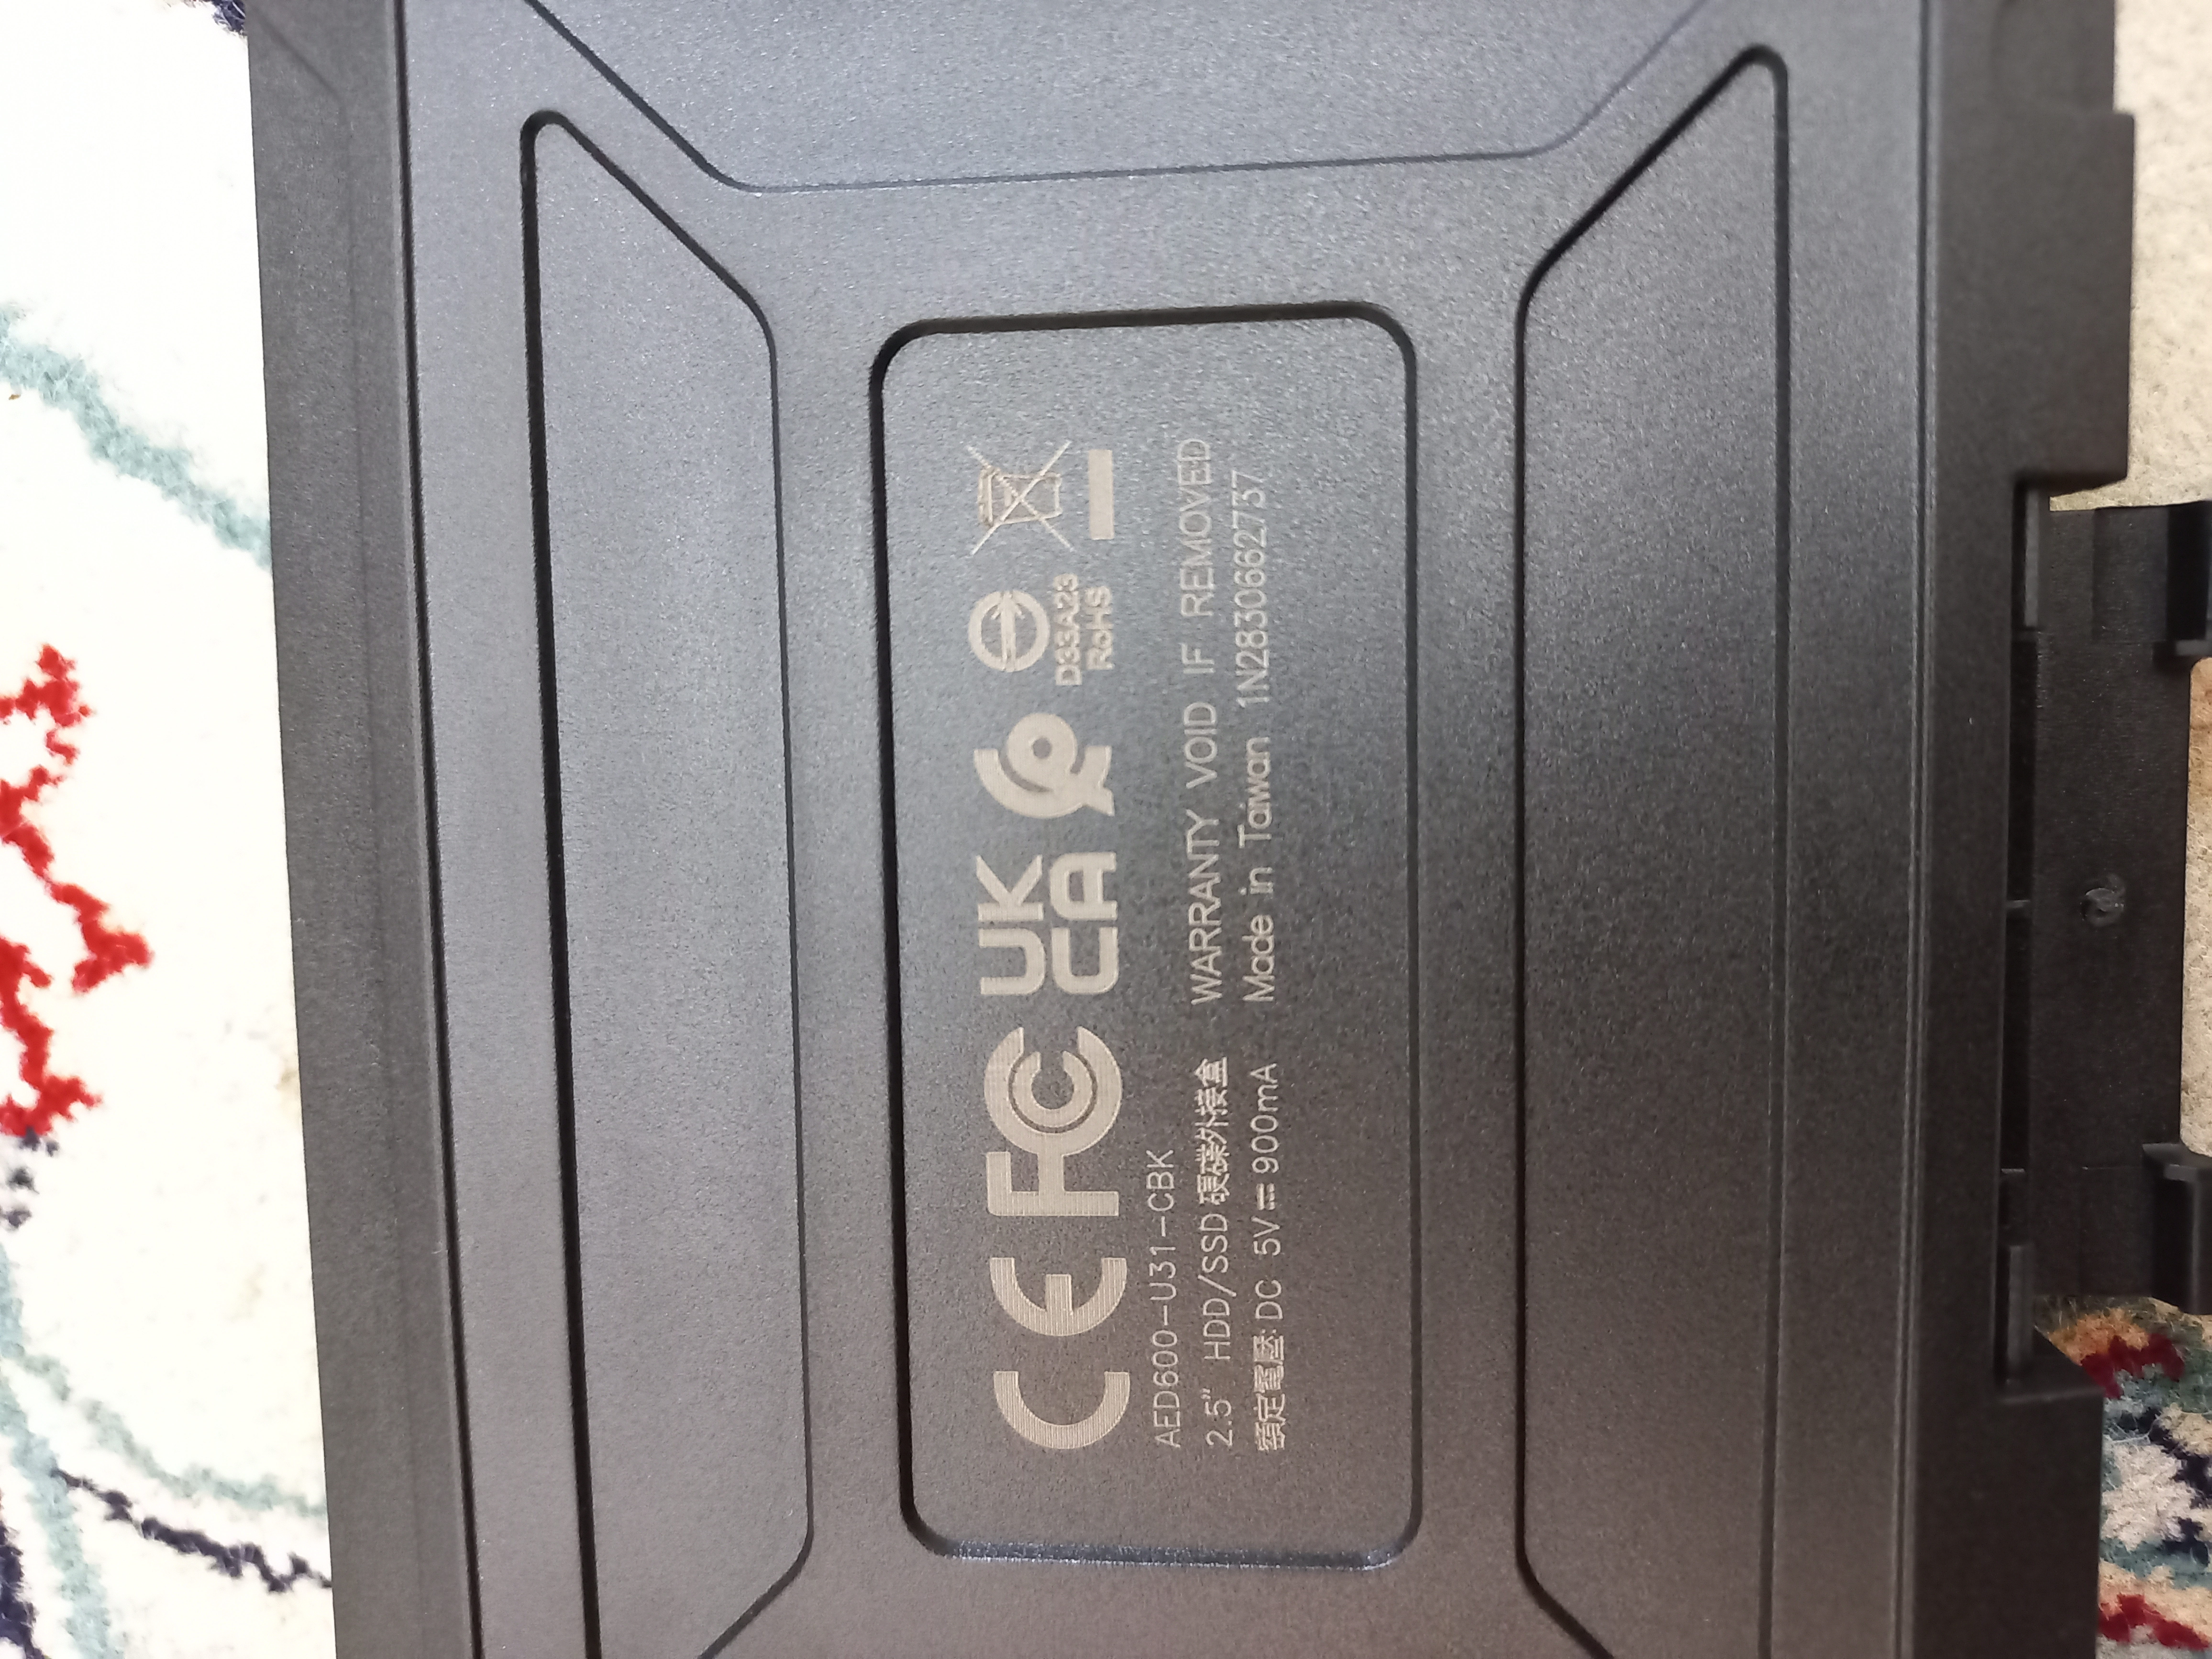 قاب اکسترنال ای دیتا مدل ED600 مناسب برای هارد دیسک و حافظه اس اس دی 2.5 اینچی